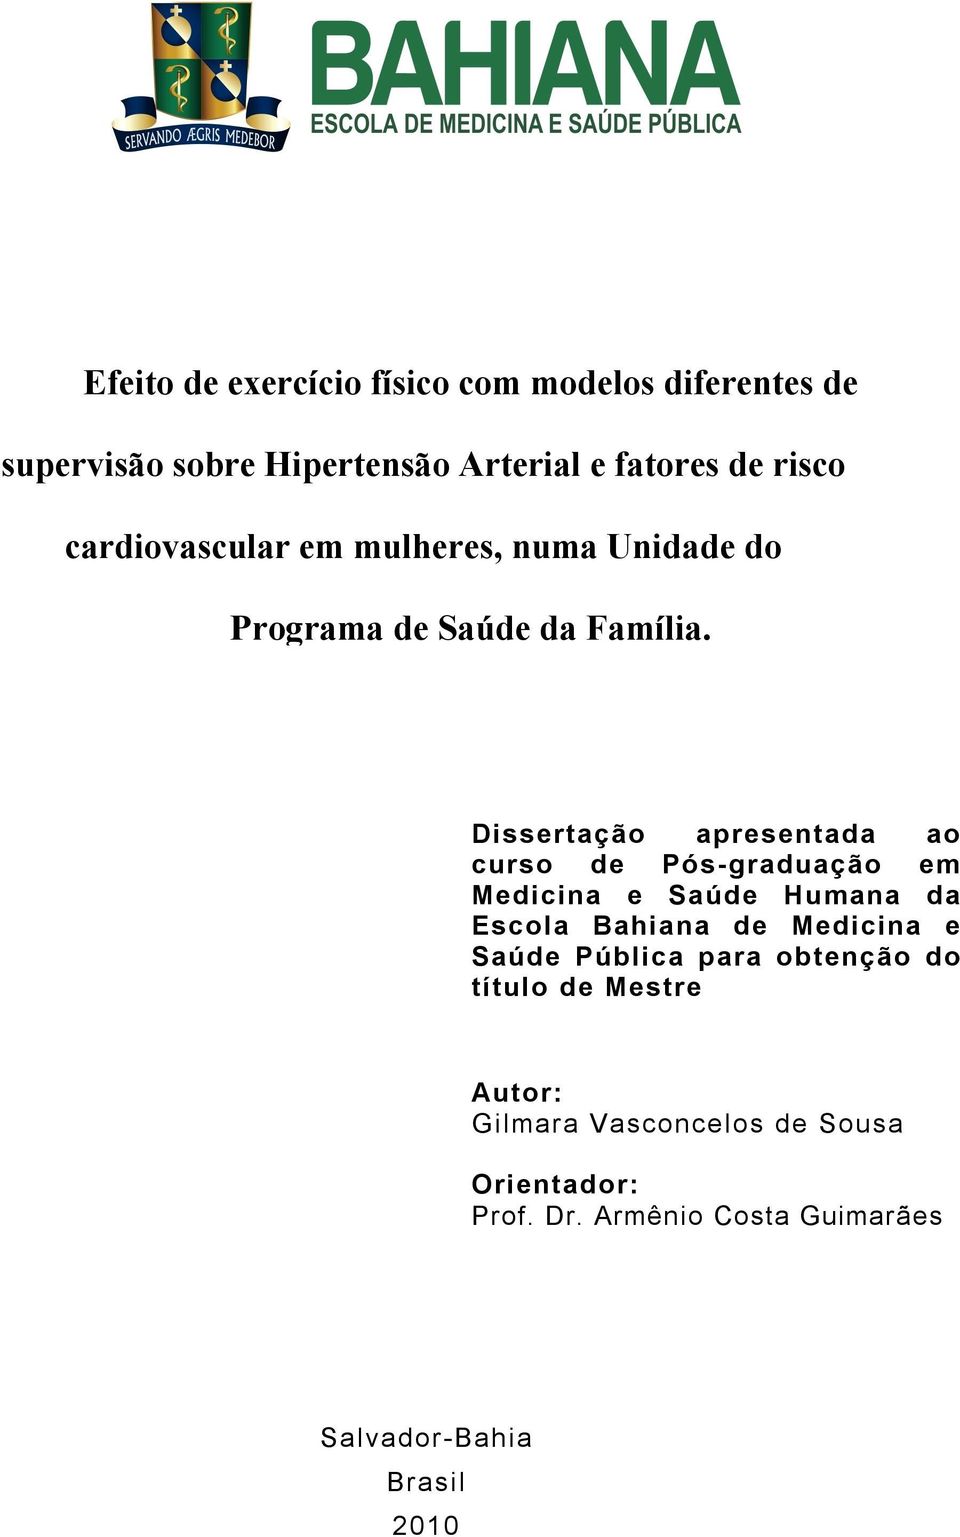 Dissertação apresentada ao curso de Pós-graduação em Medicina e Saúde Humana da Escola Bahiana de Medicina e